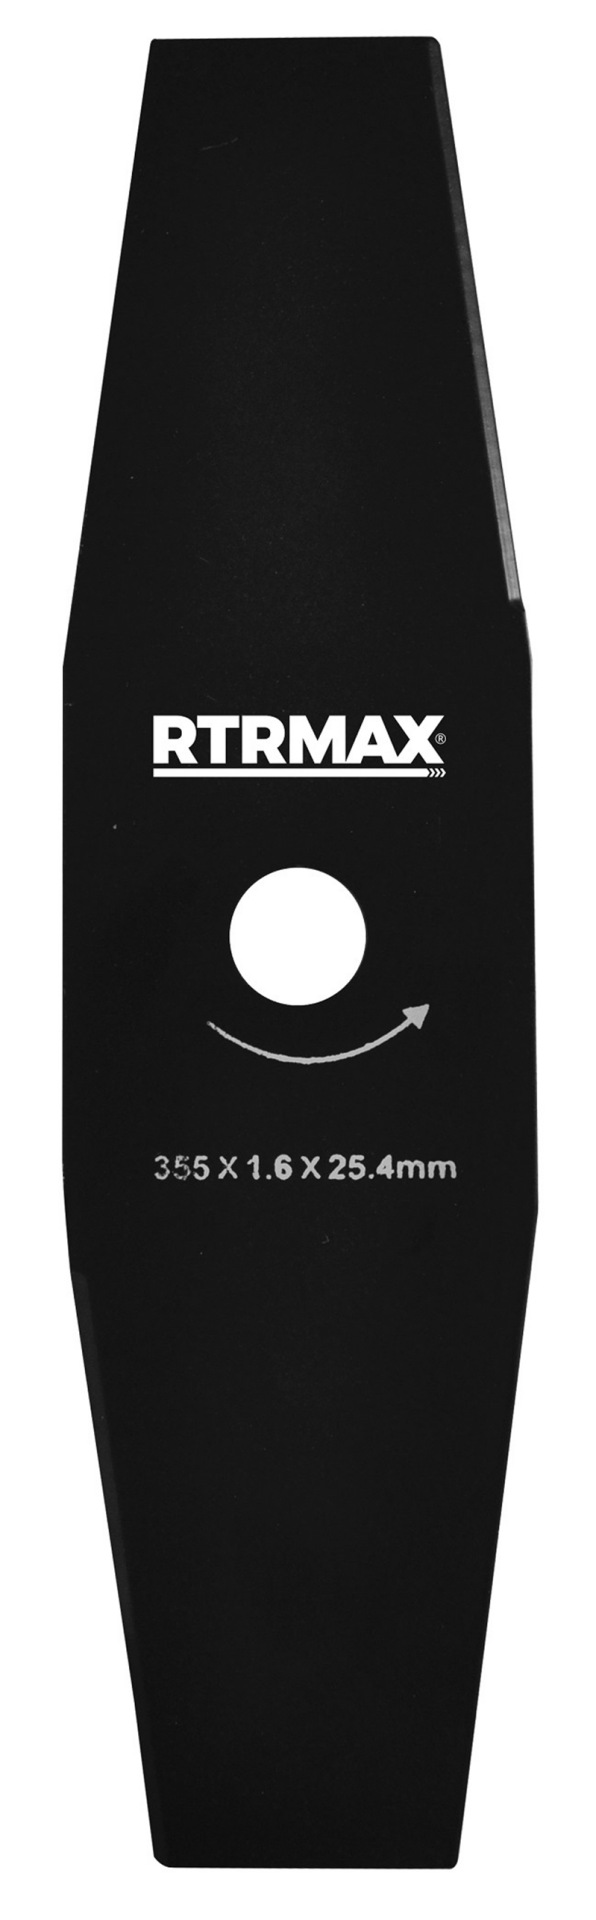 RTRMAX RTY115 2'li 300 x 25.4 X 1.6 mm Tırpan Bıçağı